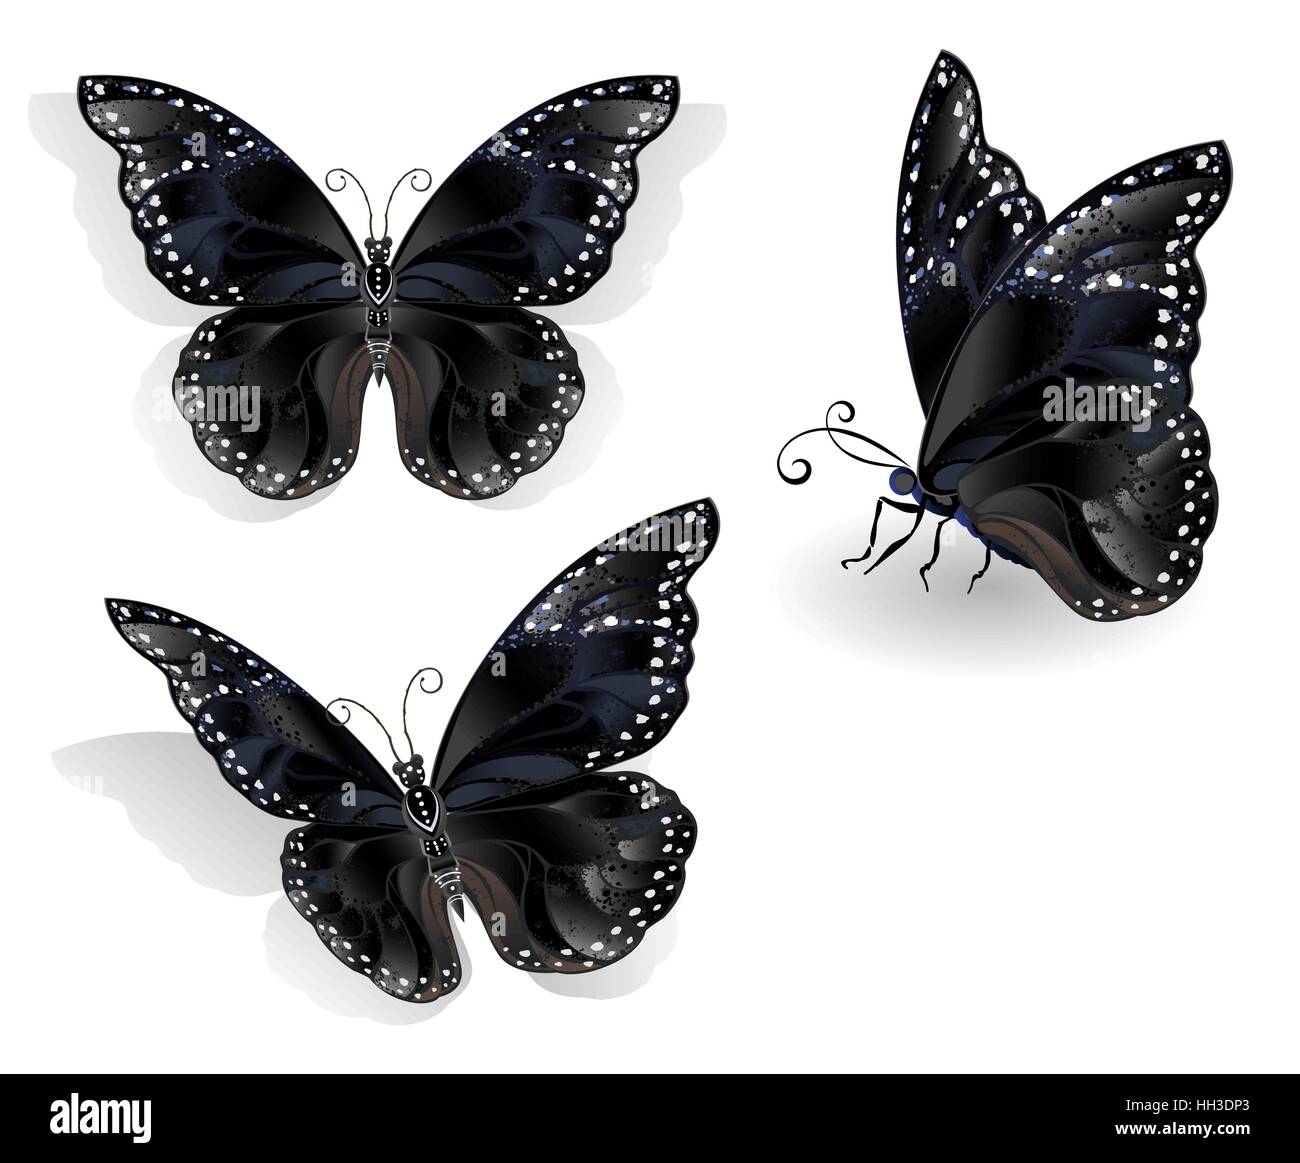 Ensemble d'isolés, réaliste, noir papillons morpho sur un fond blanc. Conception avec les papillons. Illustration de Vecteur